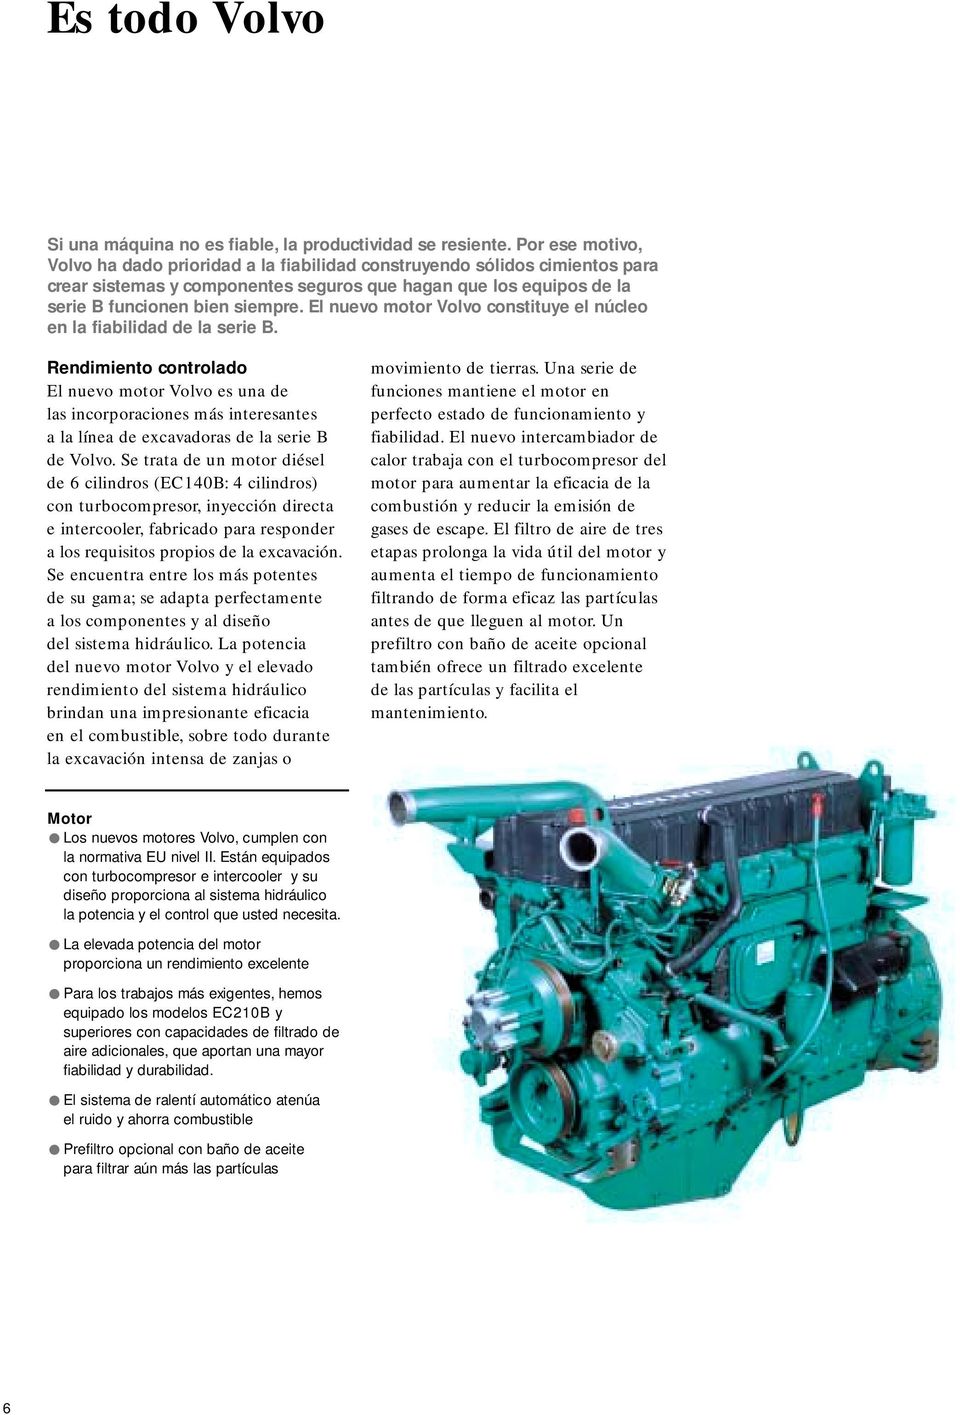 El nuevo motor Volvo constituye el núcleo en la fiabilidad de la serie B.